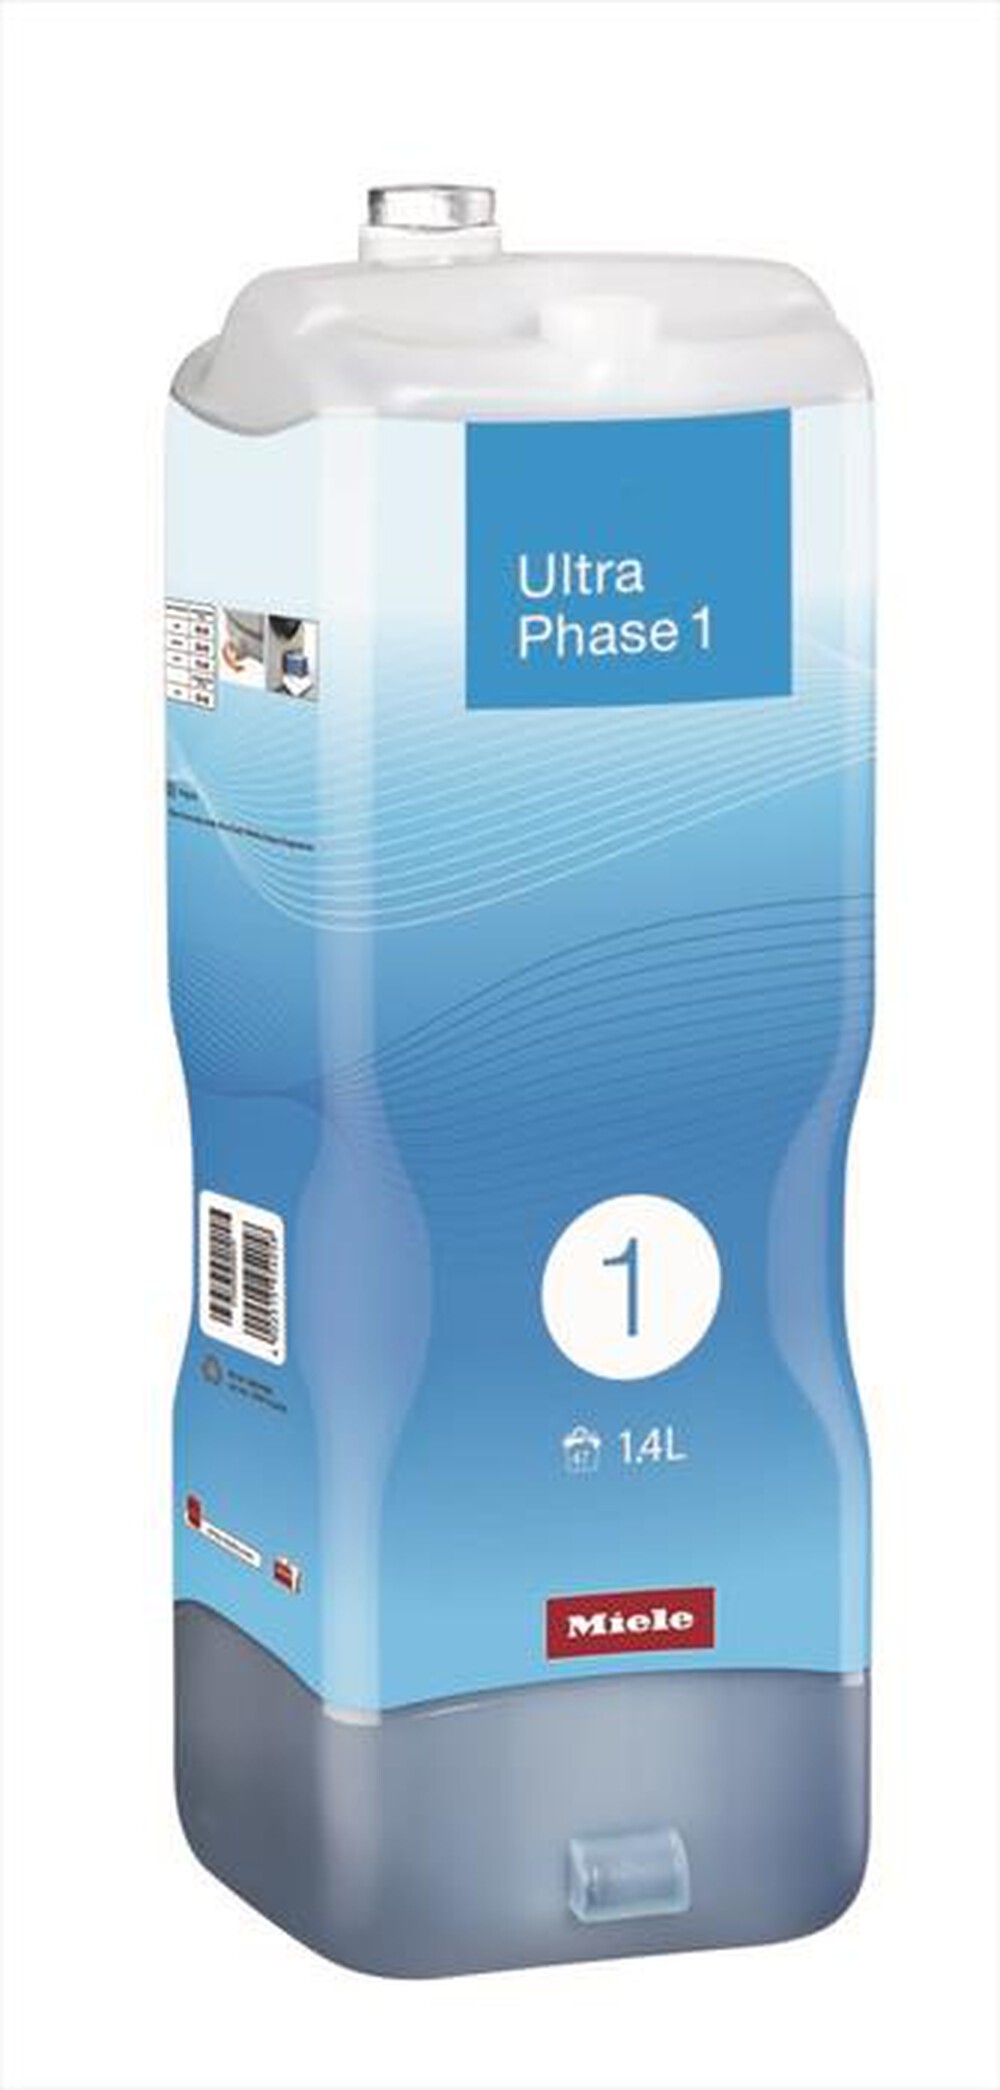 "MIELE - Ultraphase 1 Detersivo per lavatrice/asciugatrice"